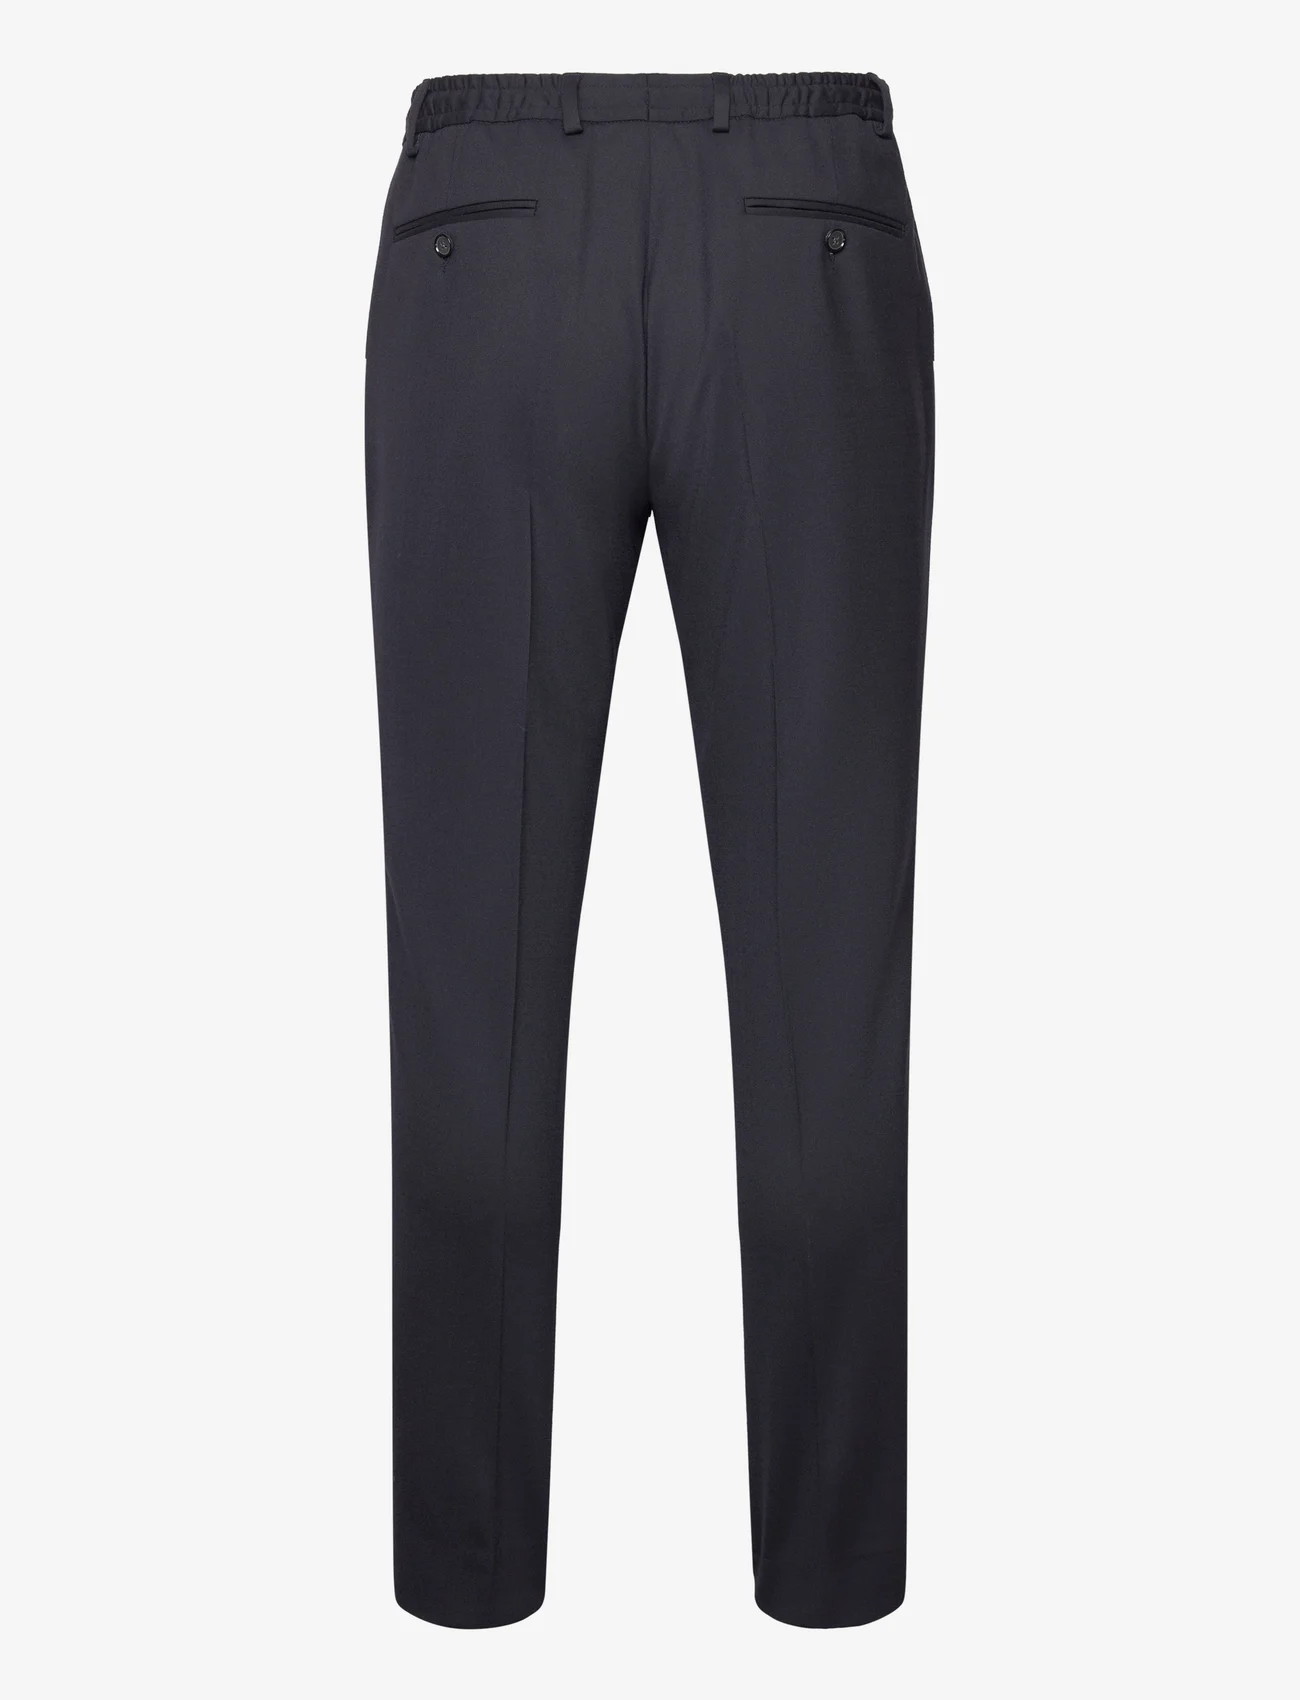 Michael Kors - FLANNEL PANT - suit trousers - navy - 1